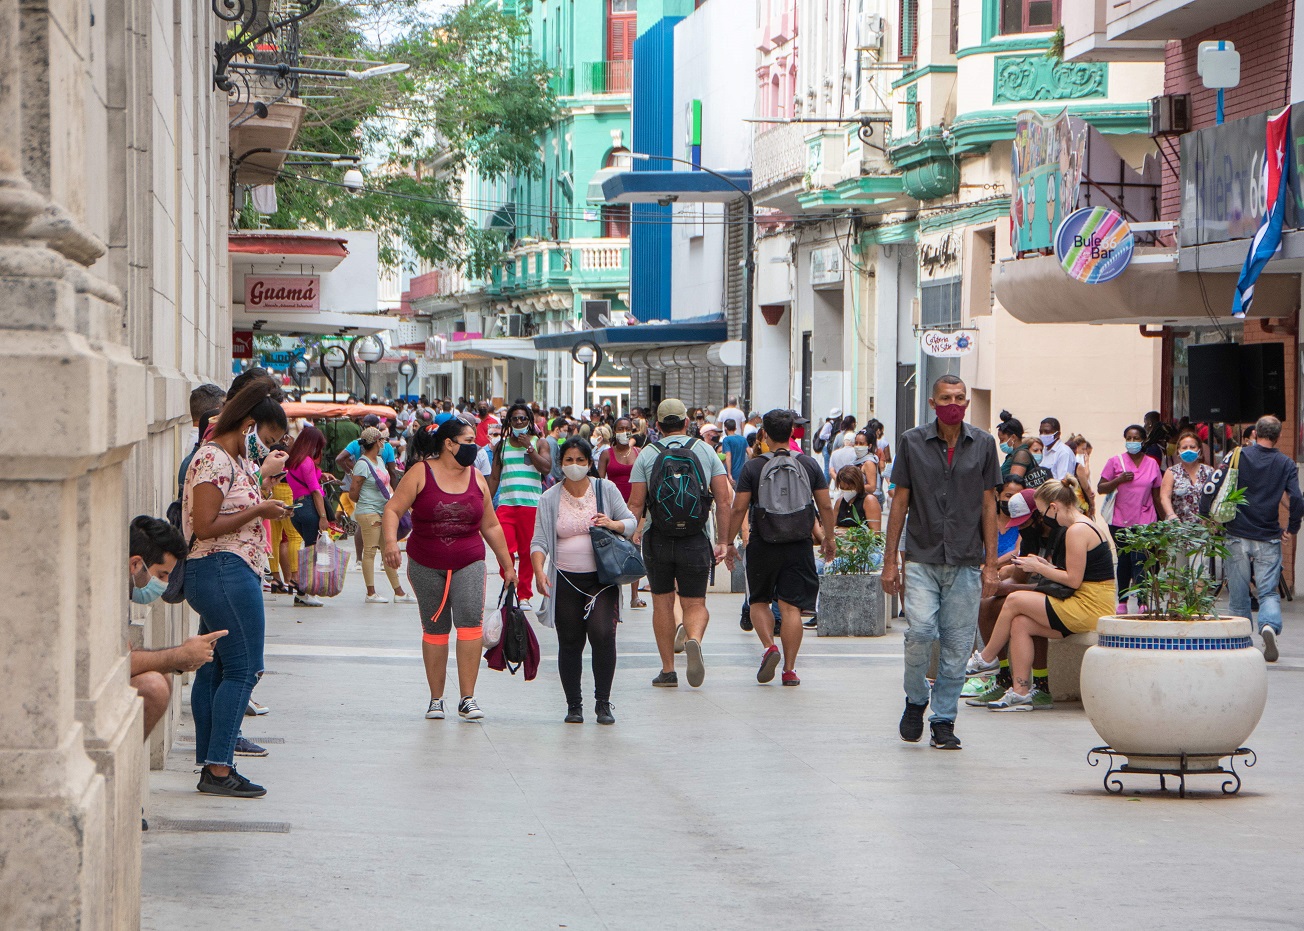 Calles cubana, gente en la calle